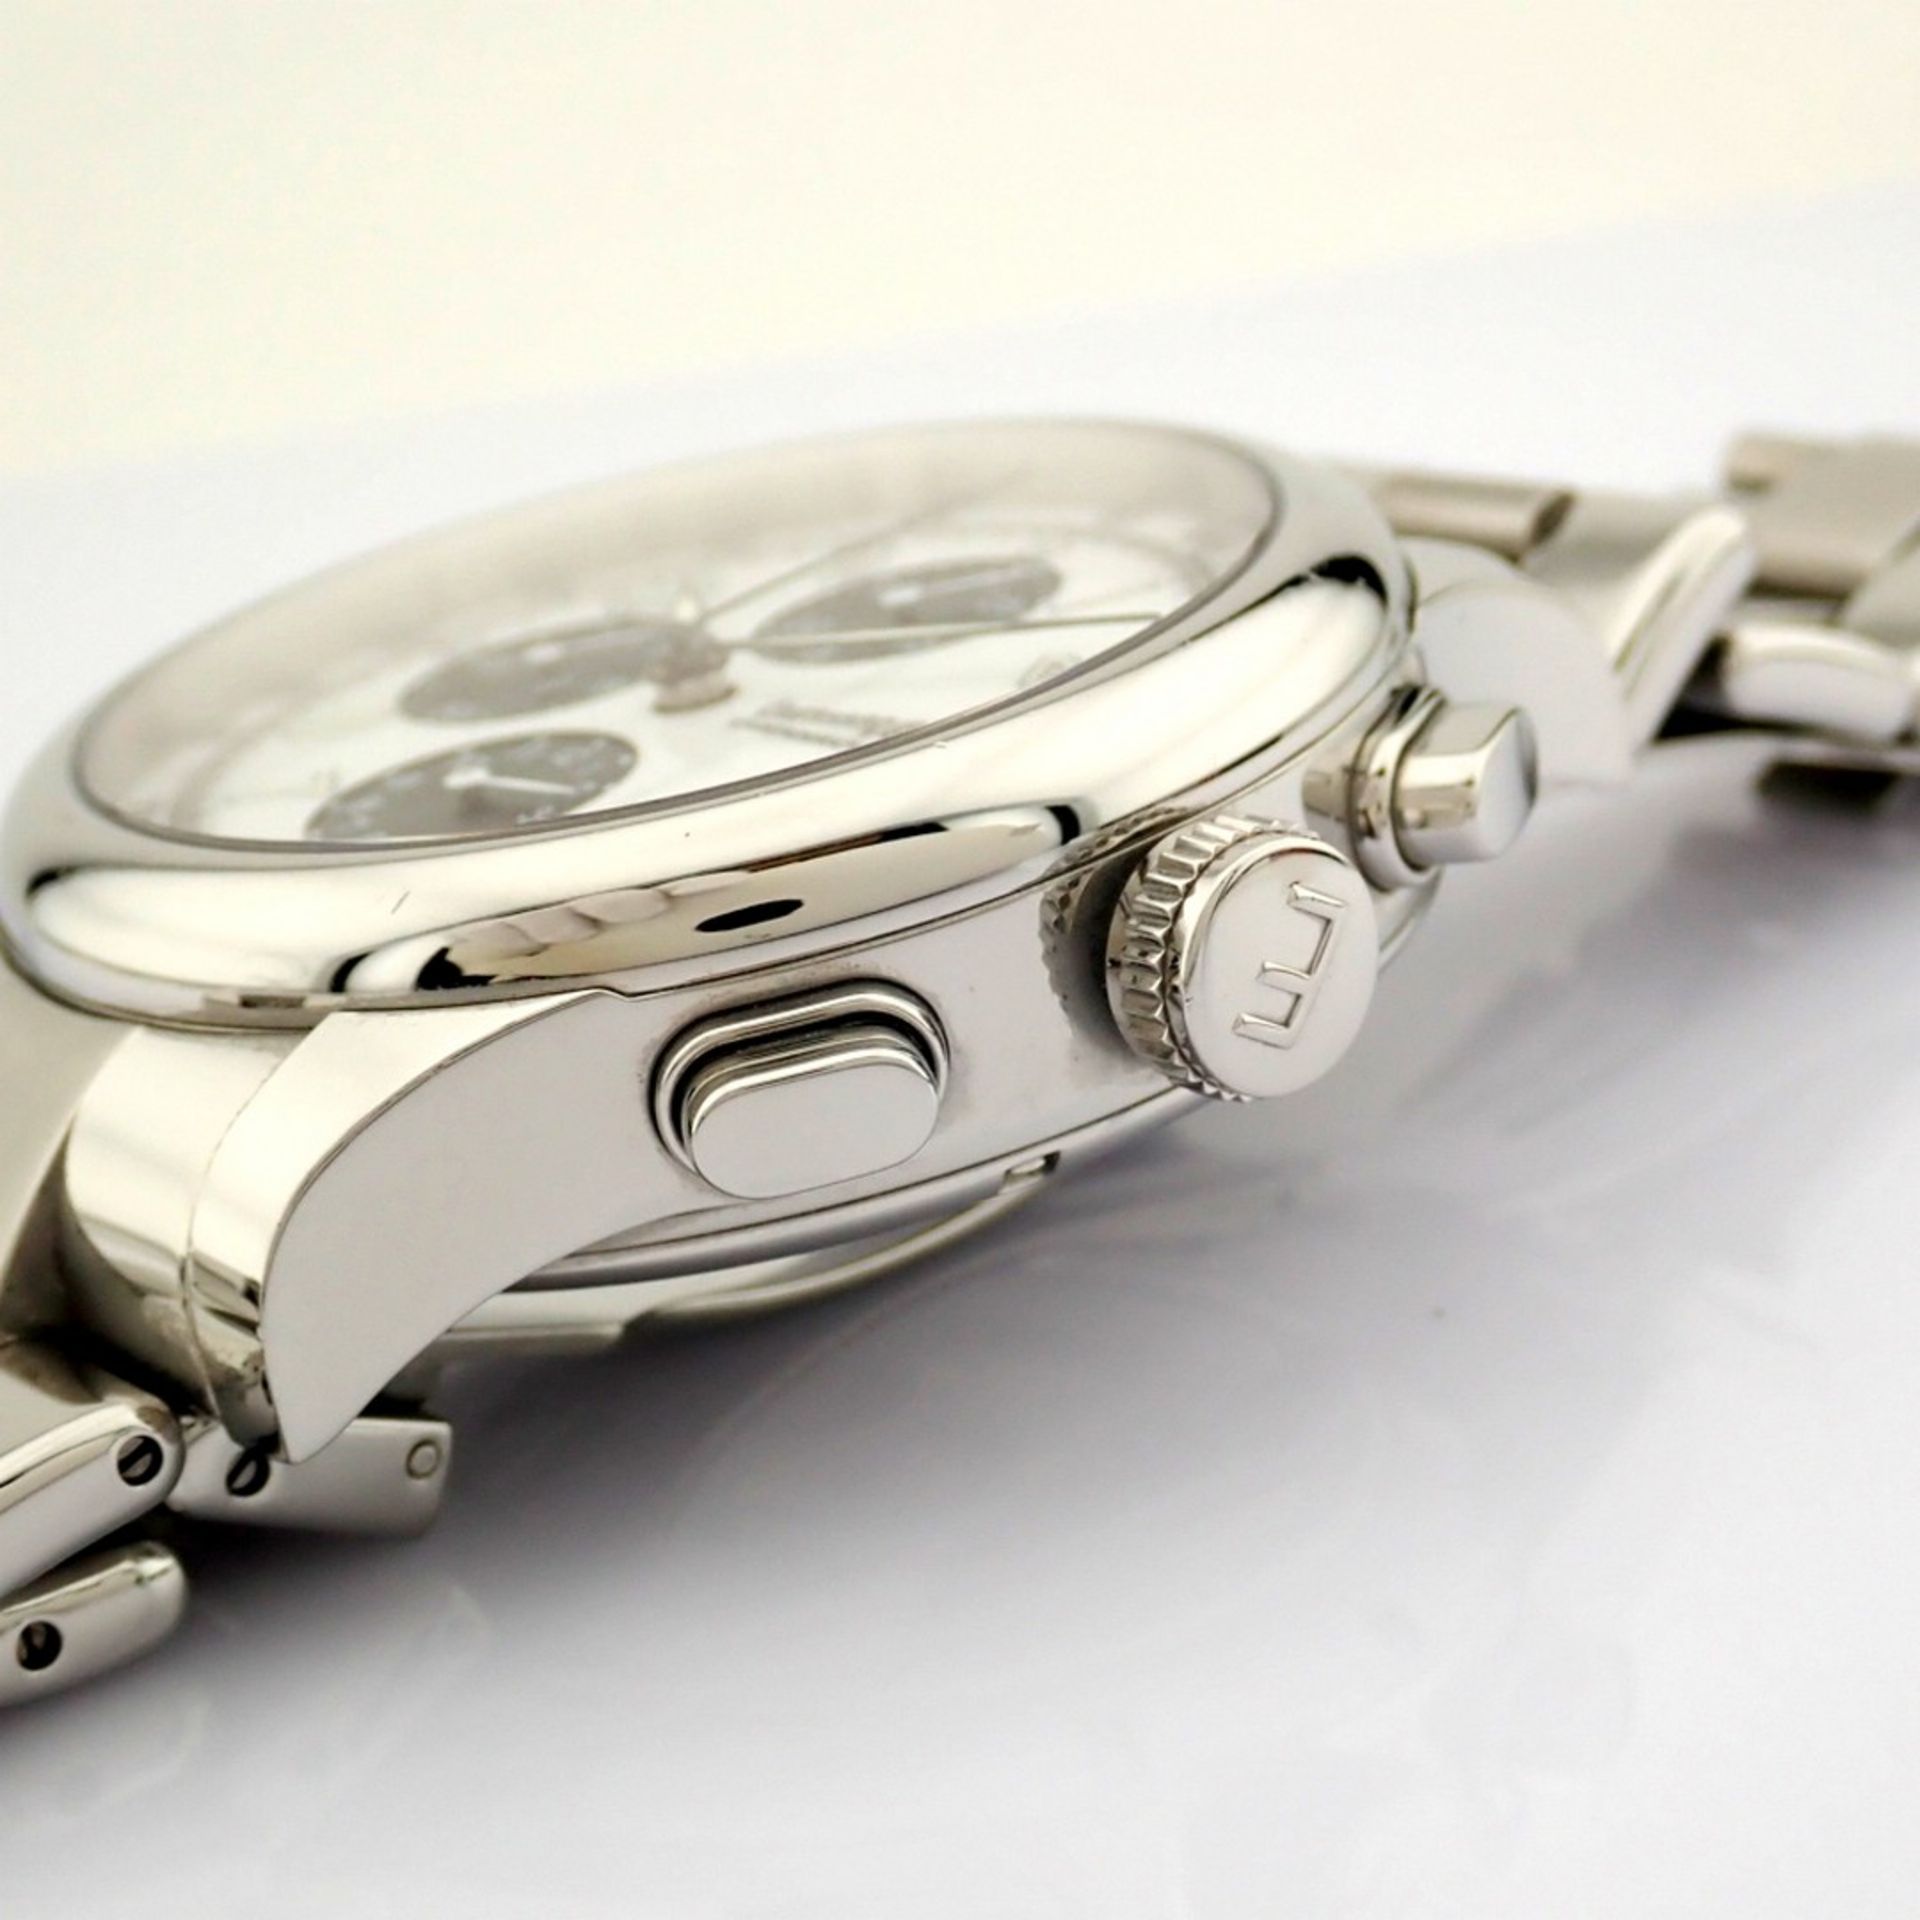 Eberhard & Co. / Traversetolo Chronograph Automatic - Gentlemen's Steel Wristwatch - Image 11 of 11